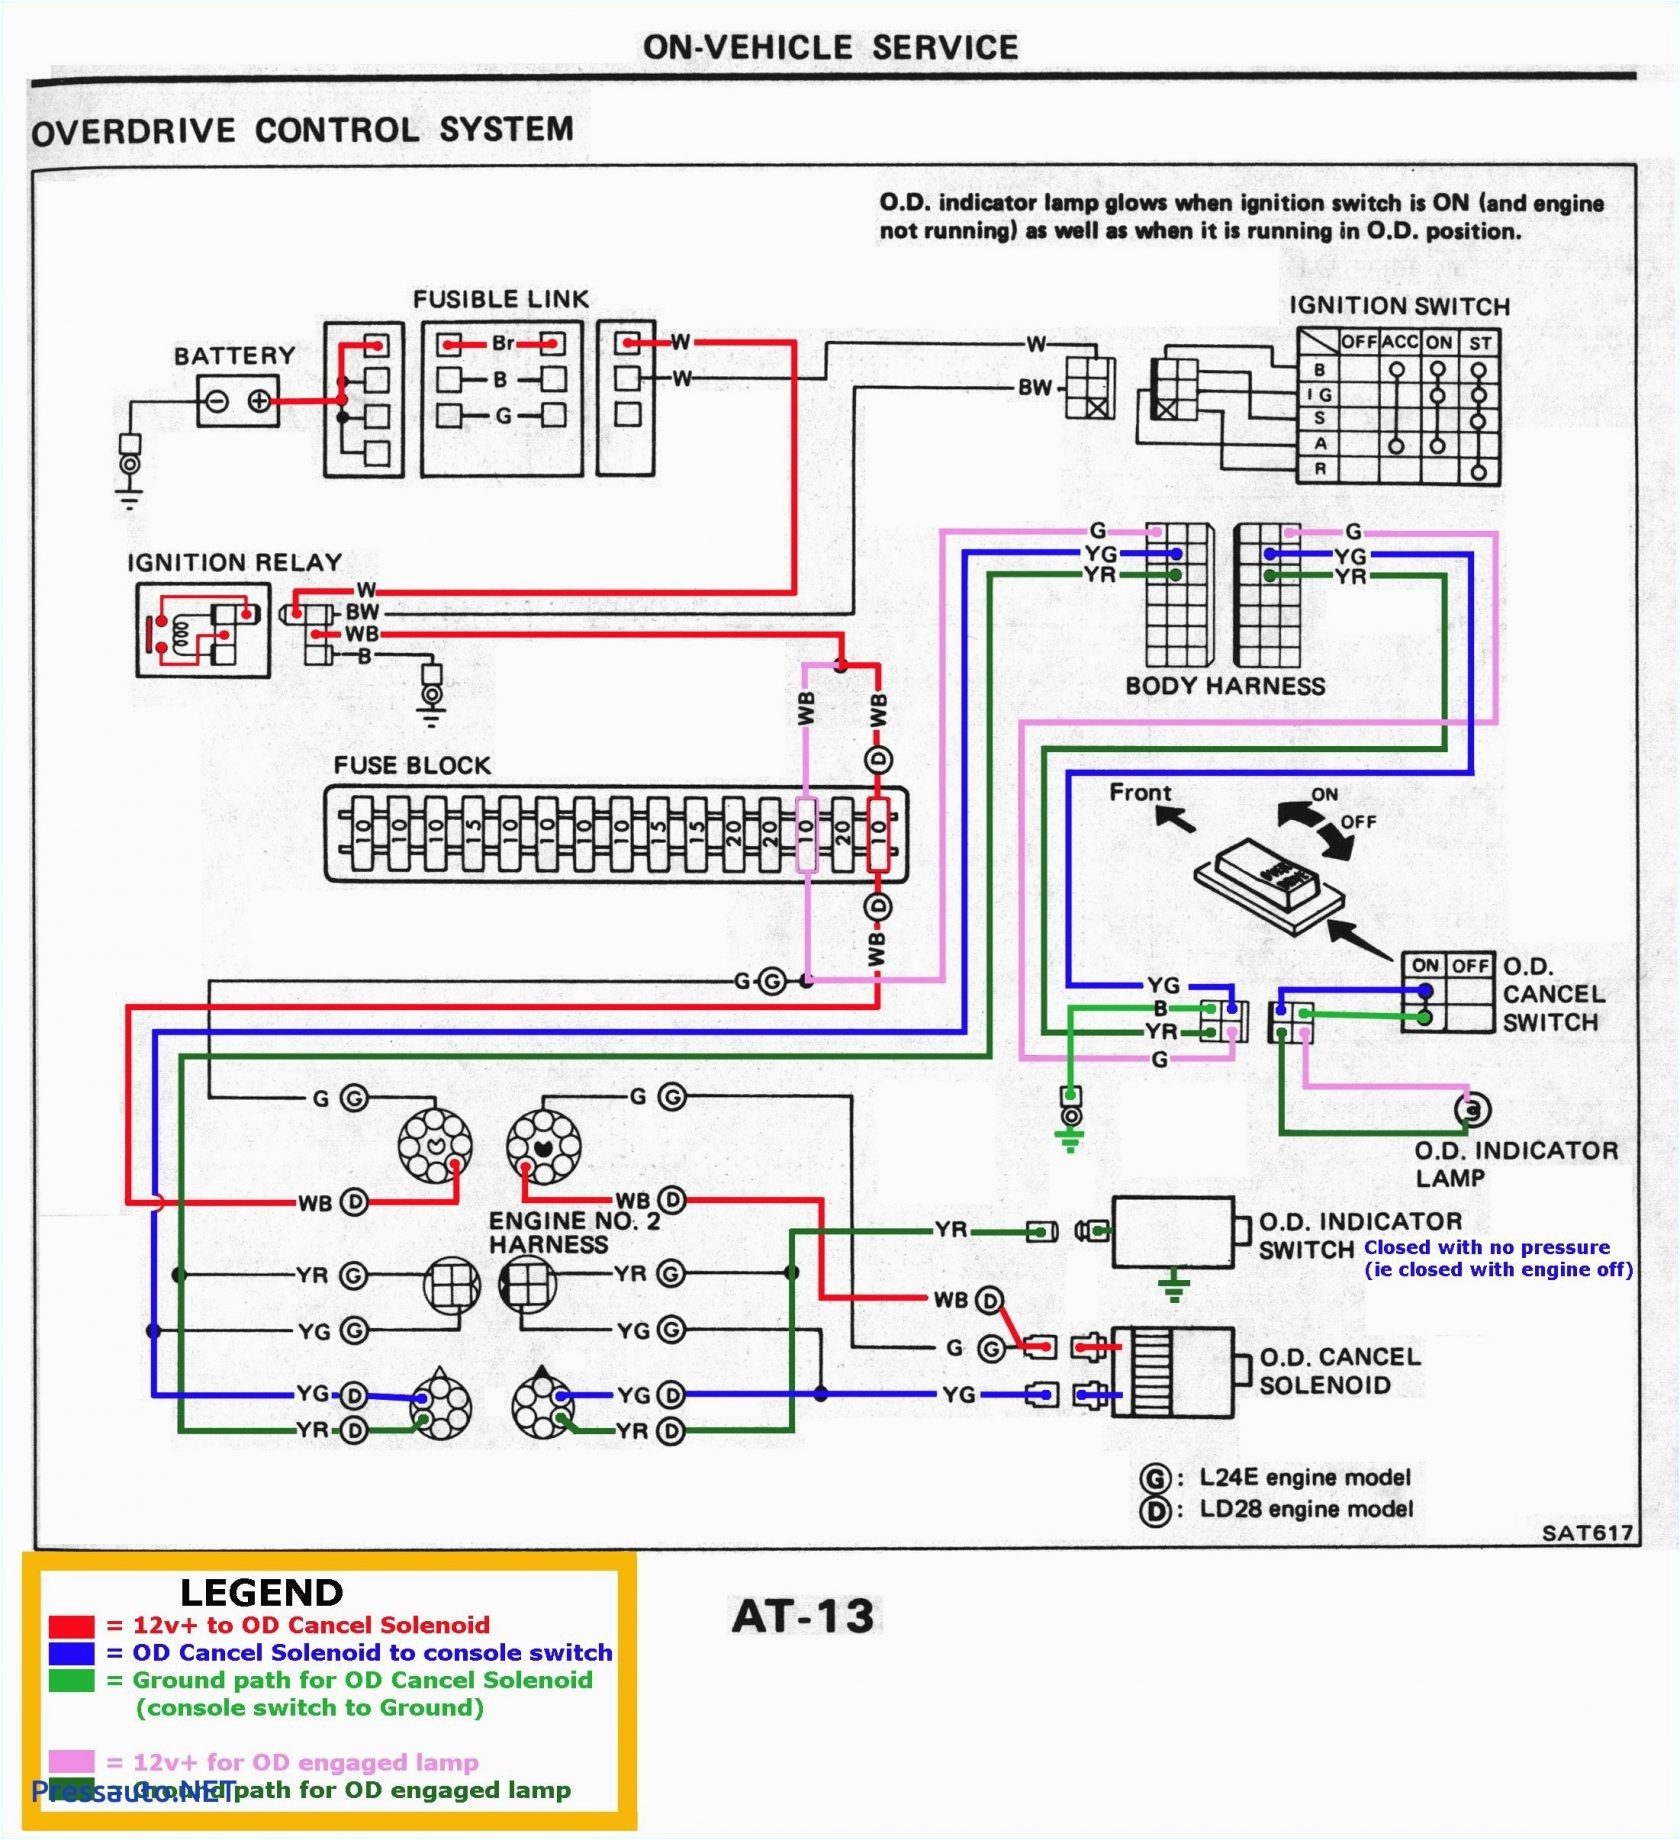 wiring diagram for 2004 suburban dash wiring diagram datasource wiring diagram for 2004 suburban dash